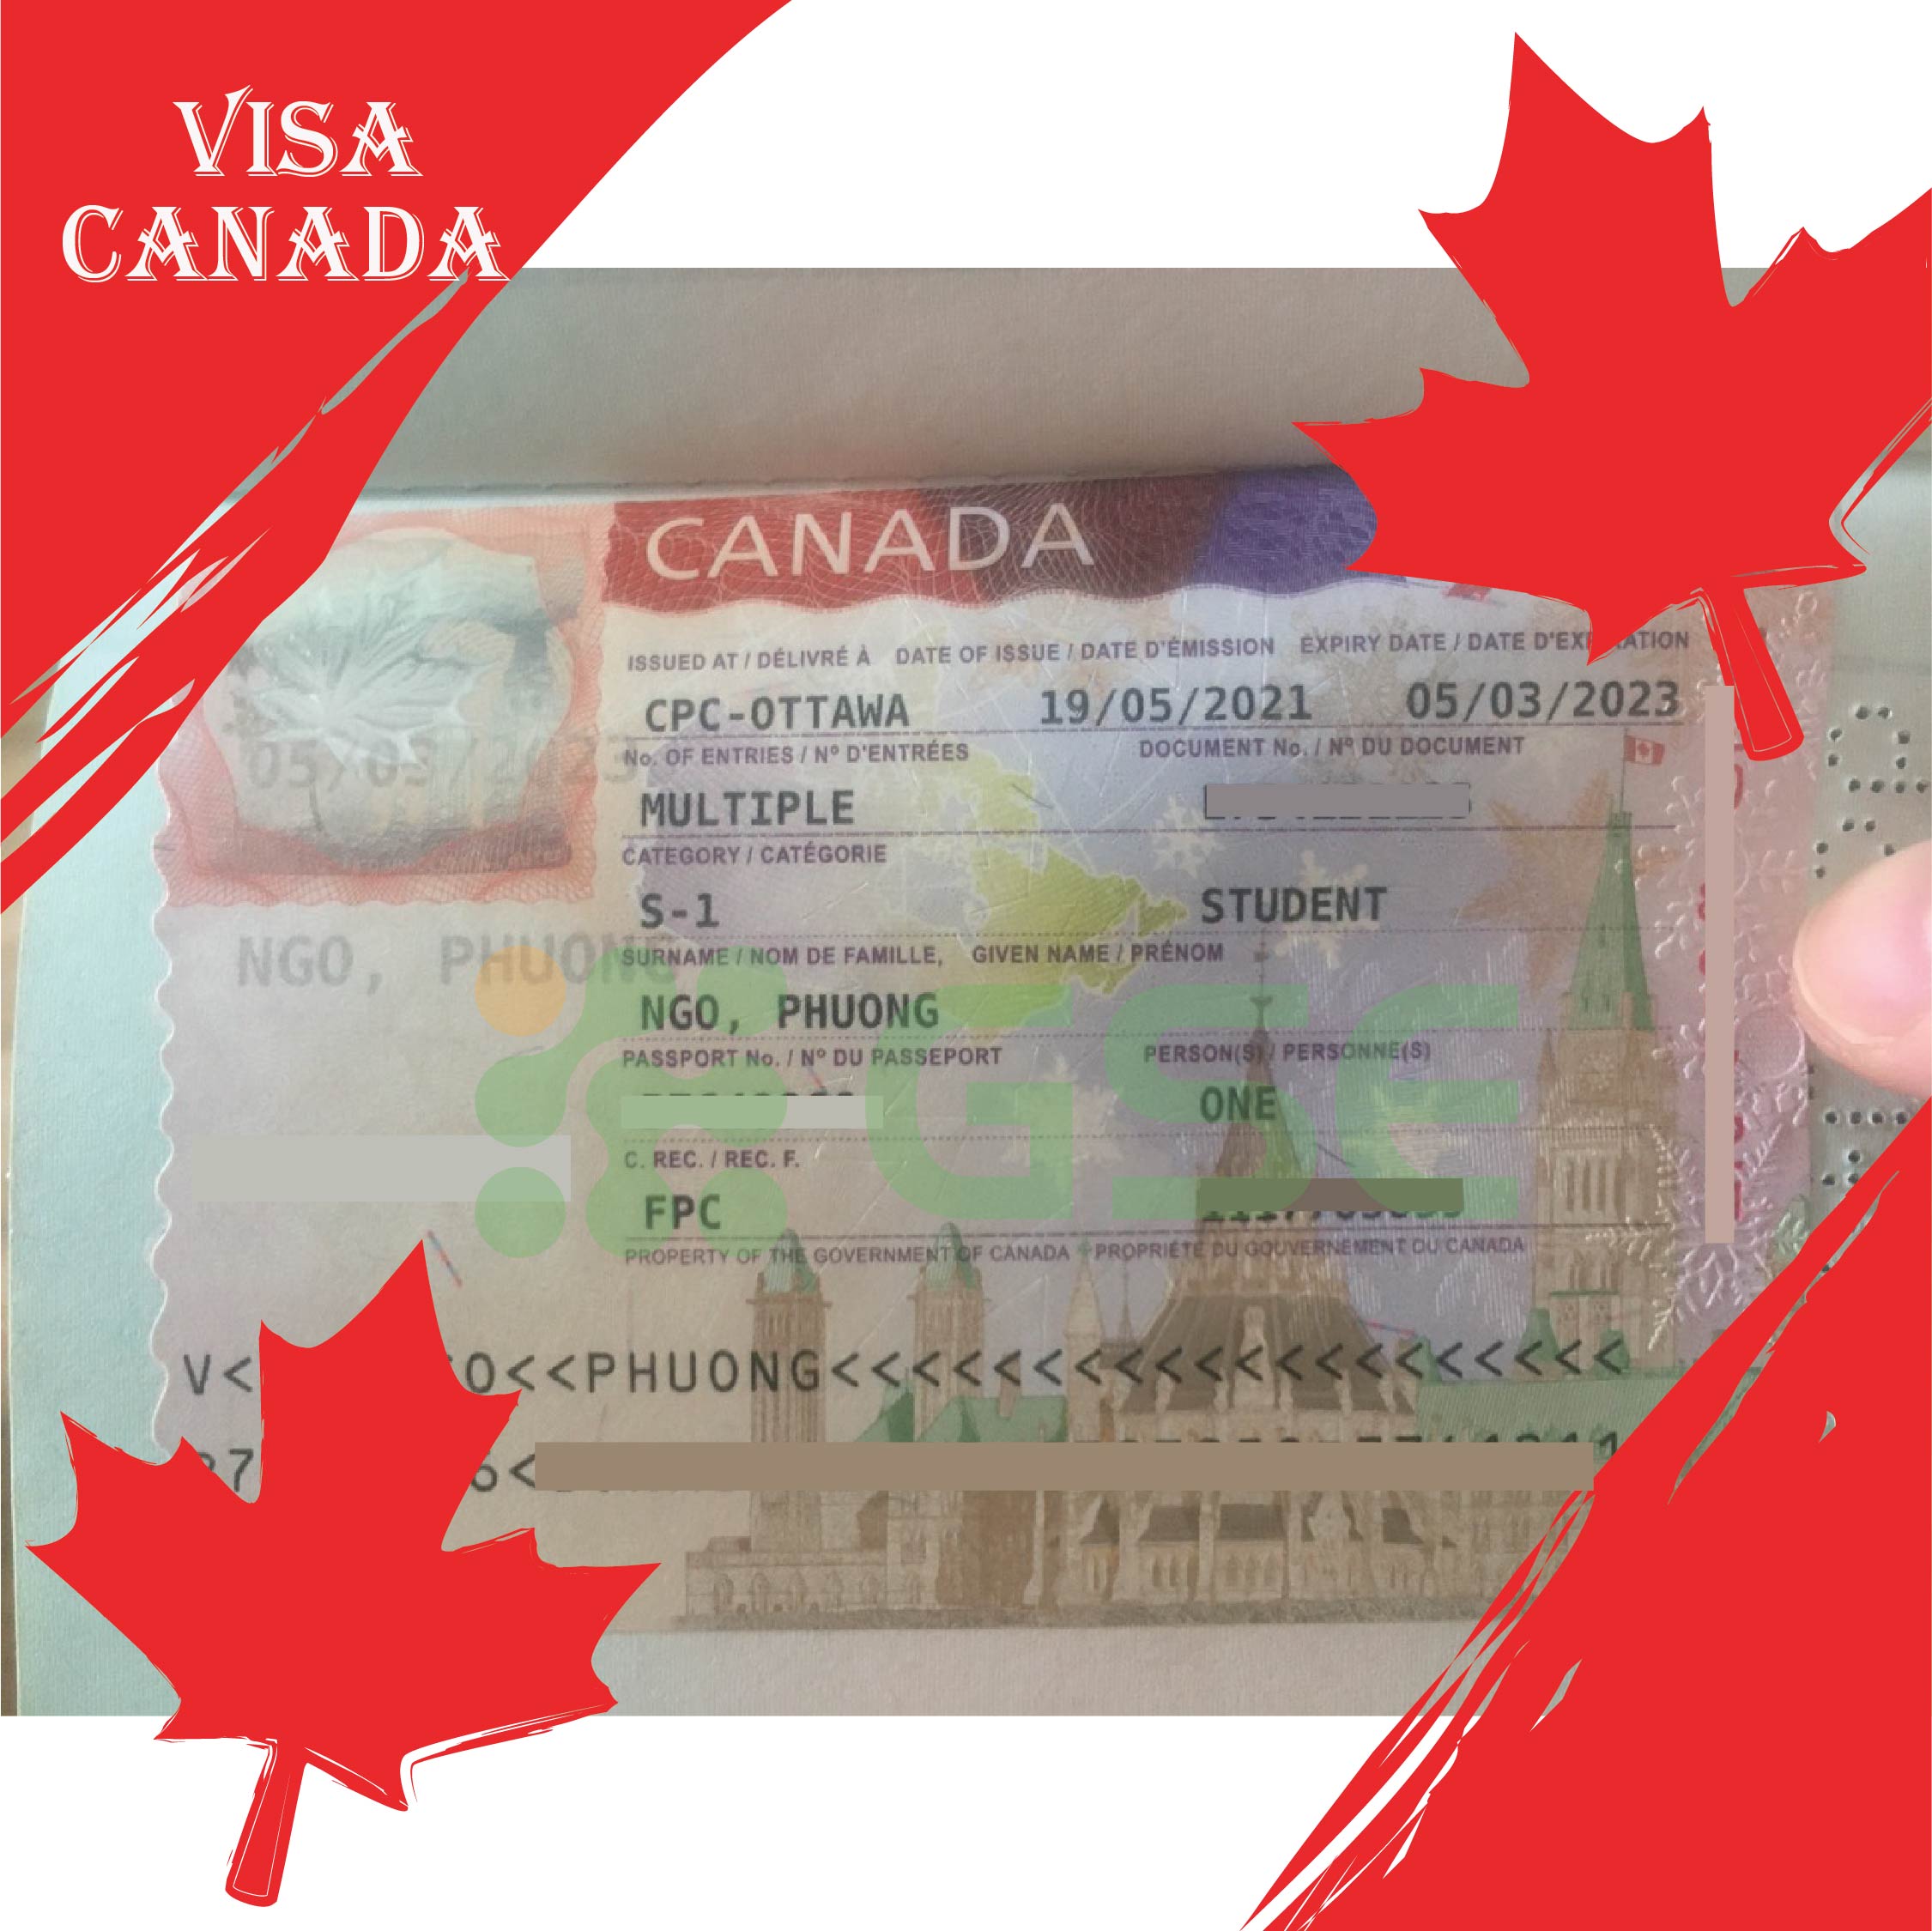 visa canada ngo phuong 02 - Visa du học Canada - Ngô Phương